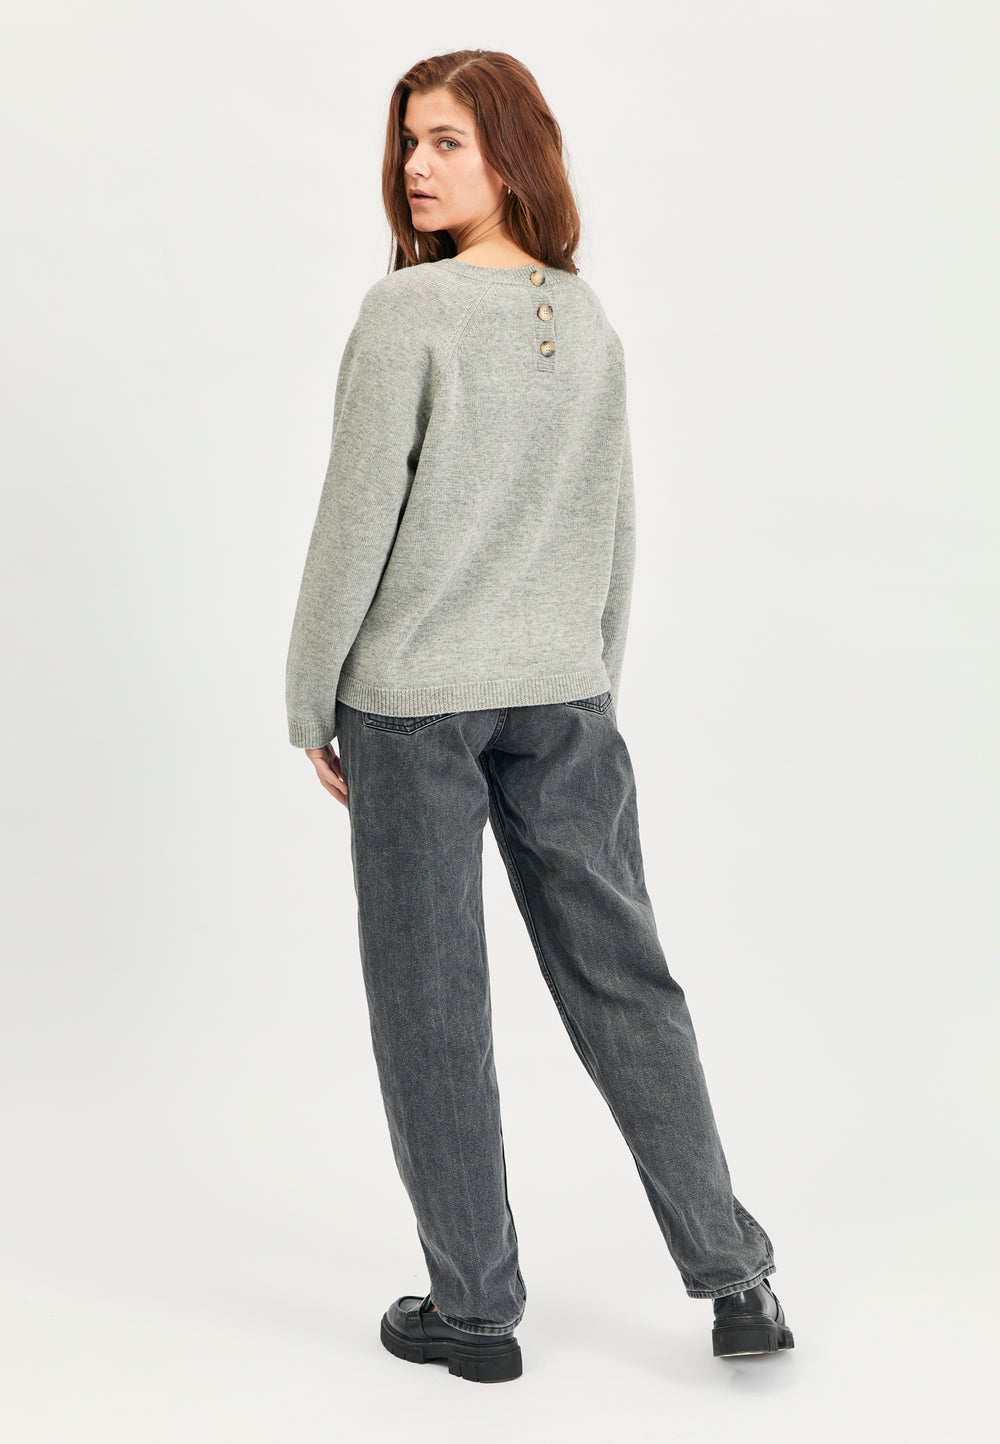 Lind Eva Knit Pullover 35 Grey Melange